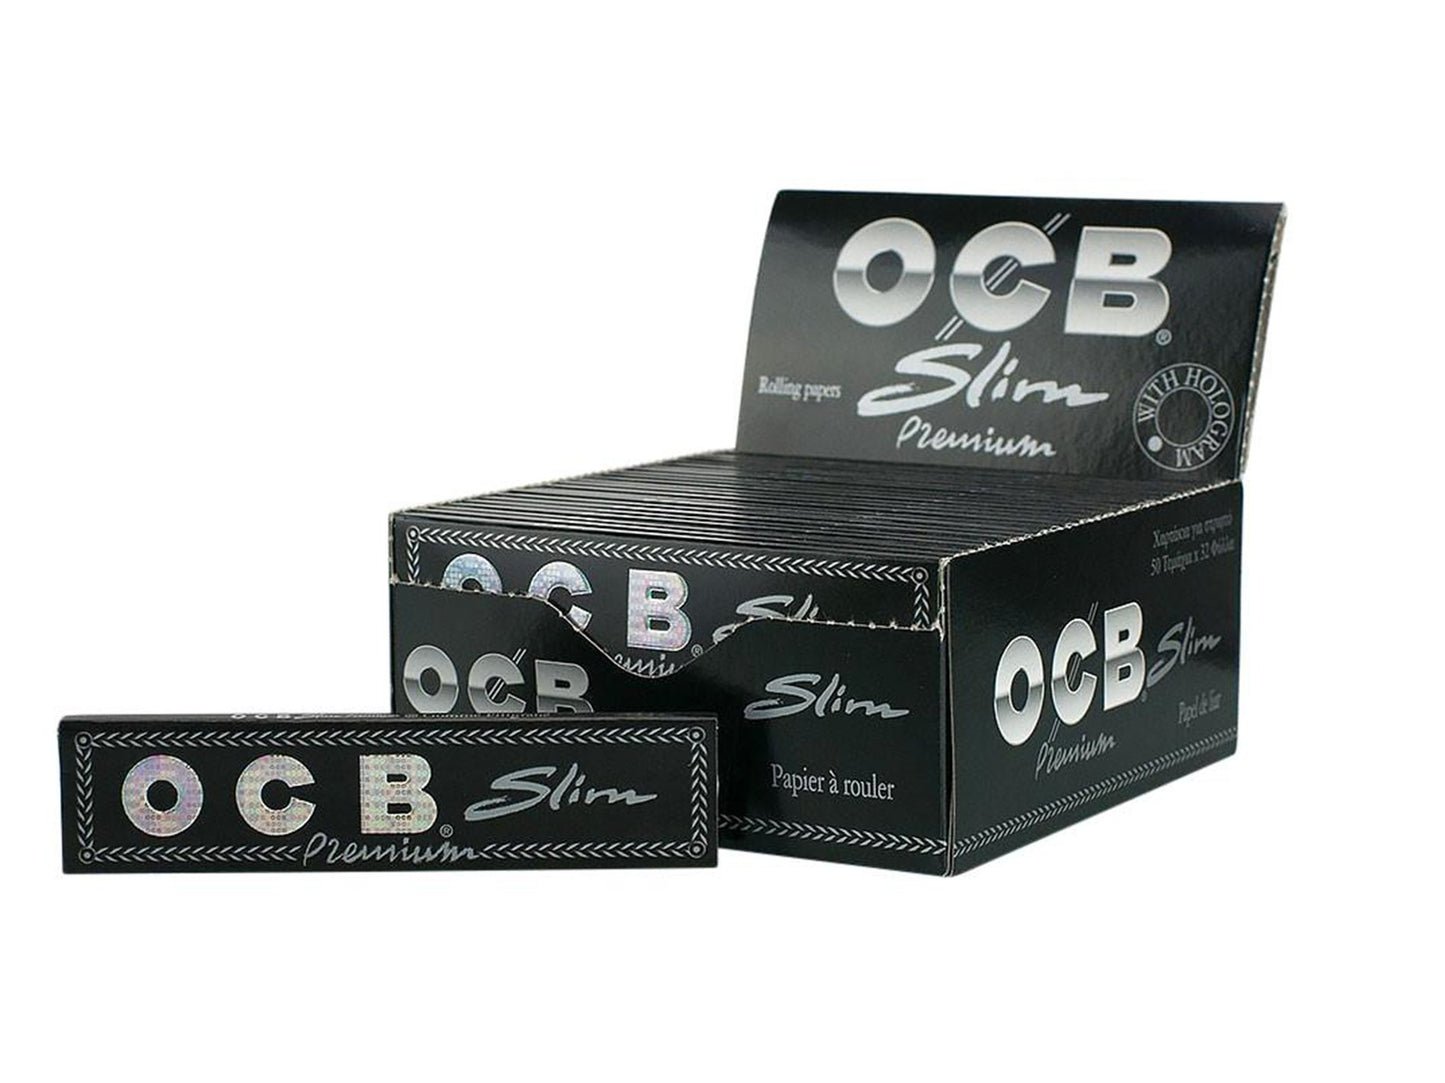 OCB Premium King Size Slim Rolling Papers - VIR Wholesale